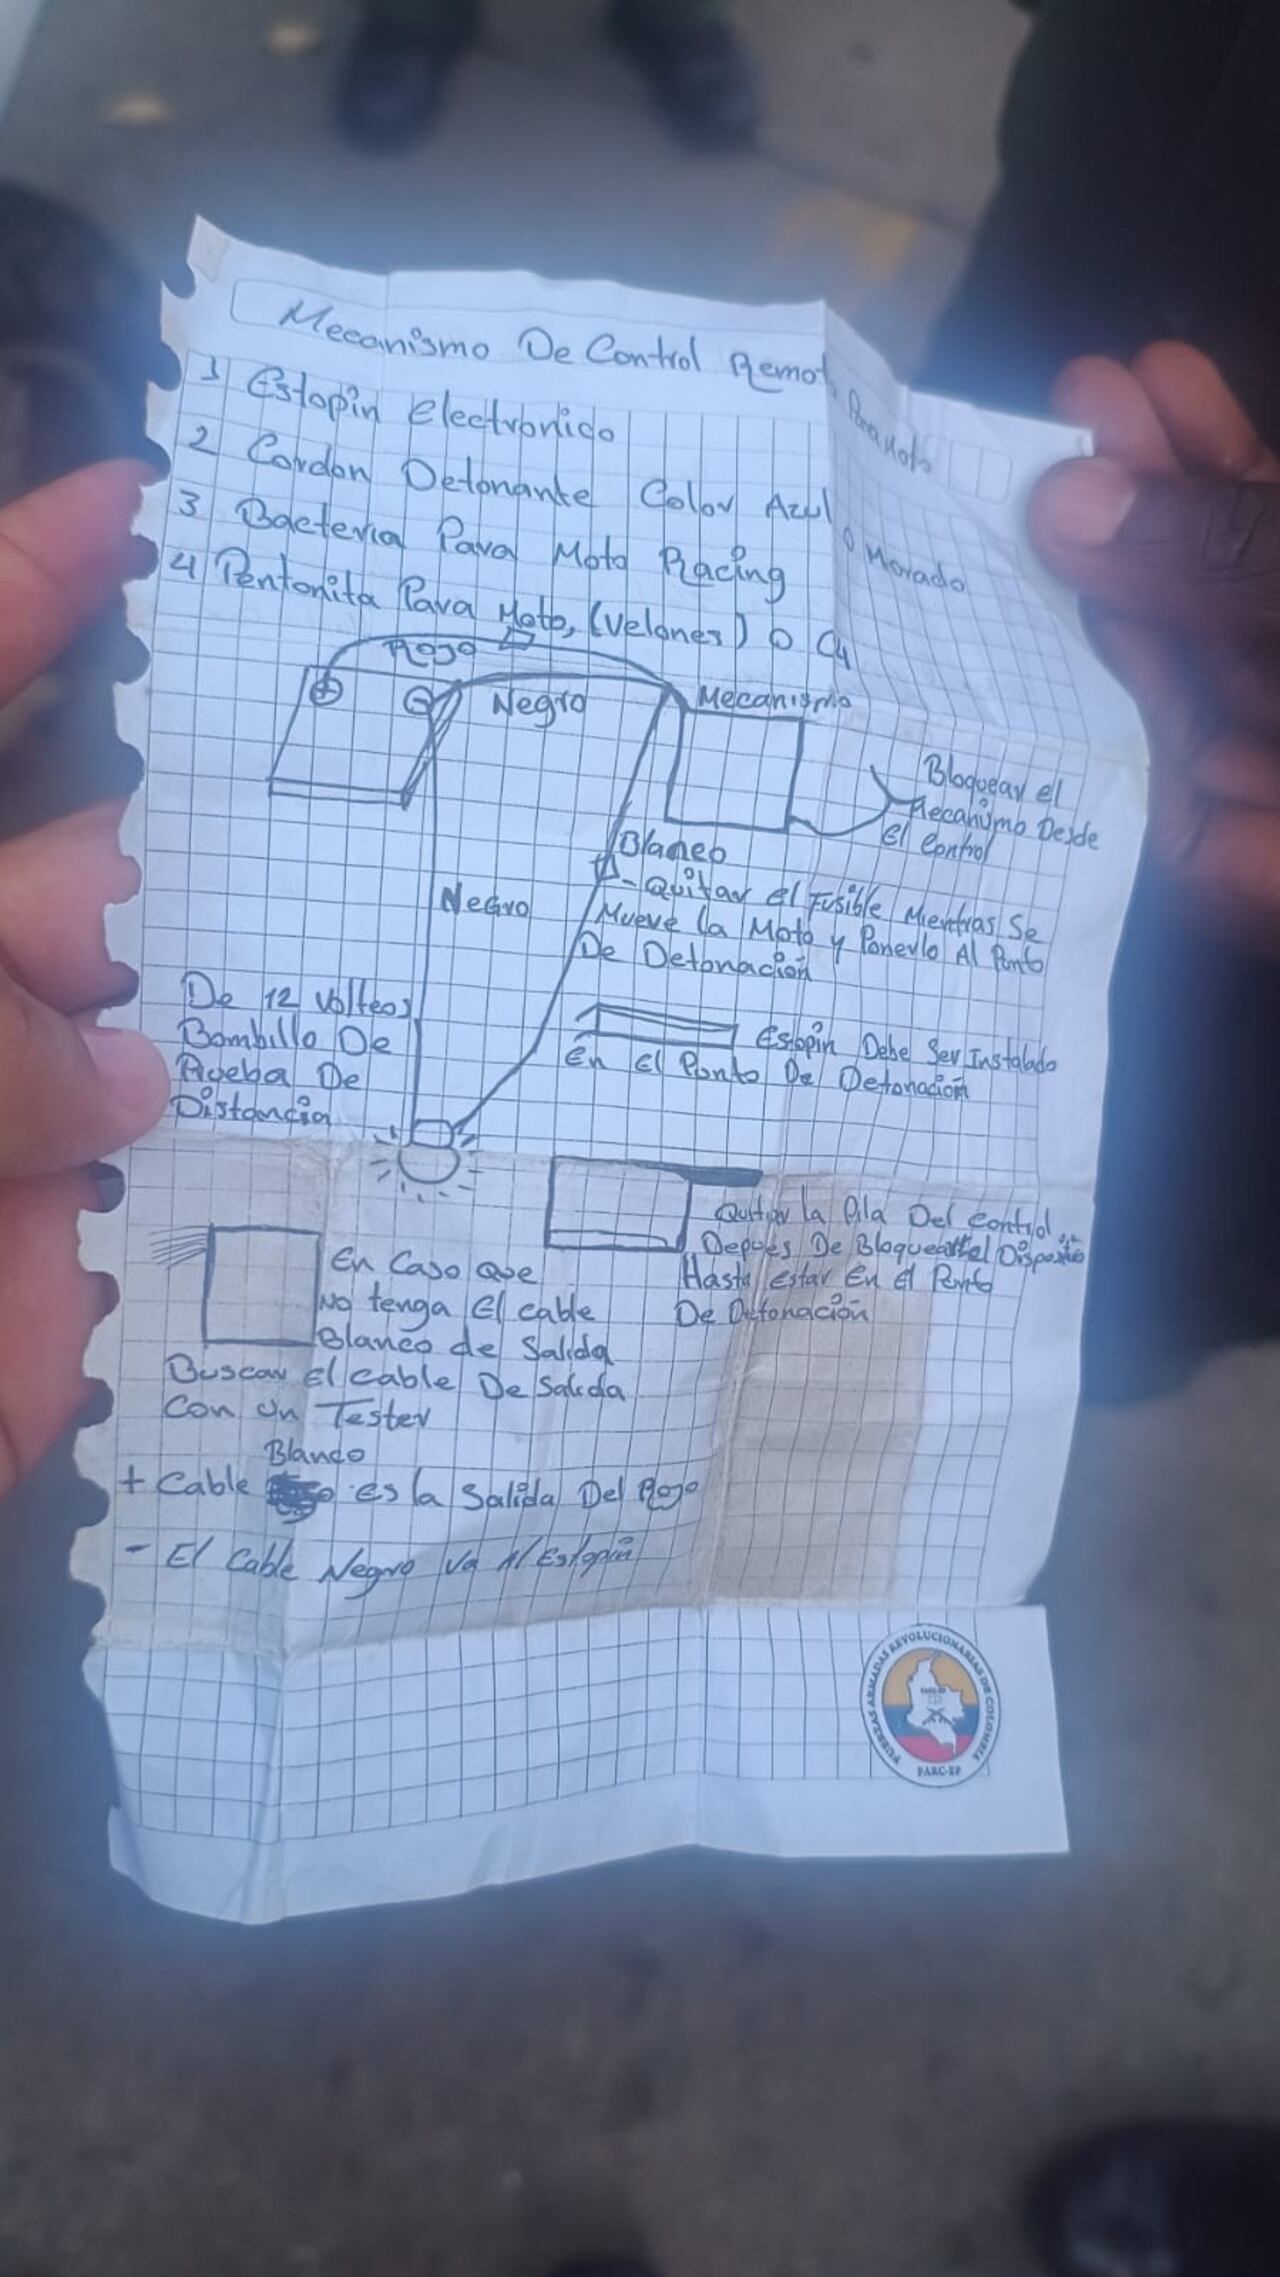 Este documento fue encontrado por el Ejército, instruye cómo hacer explosivos.